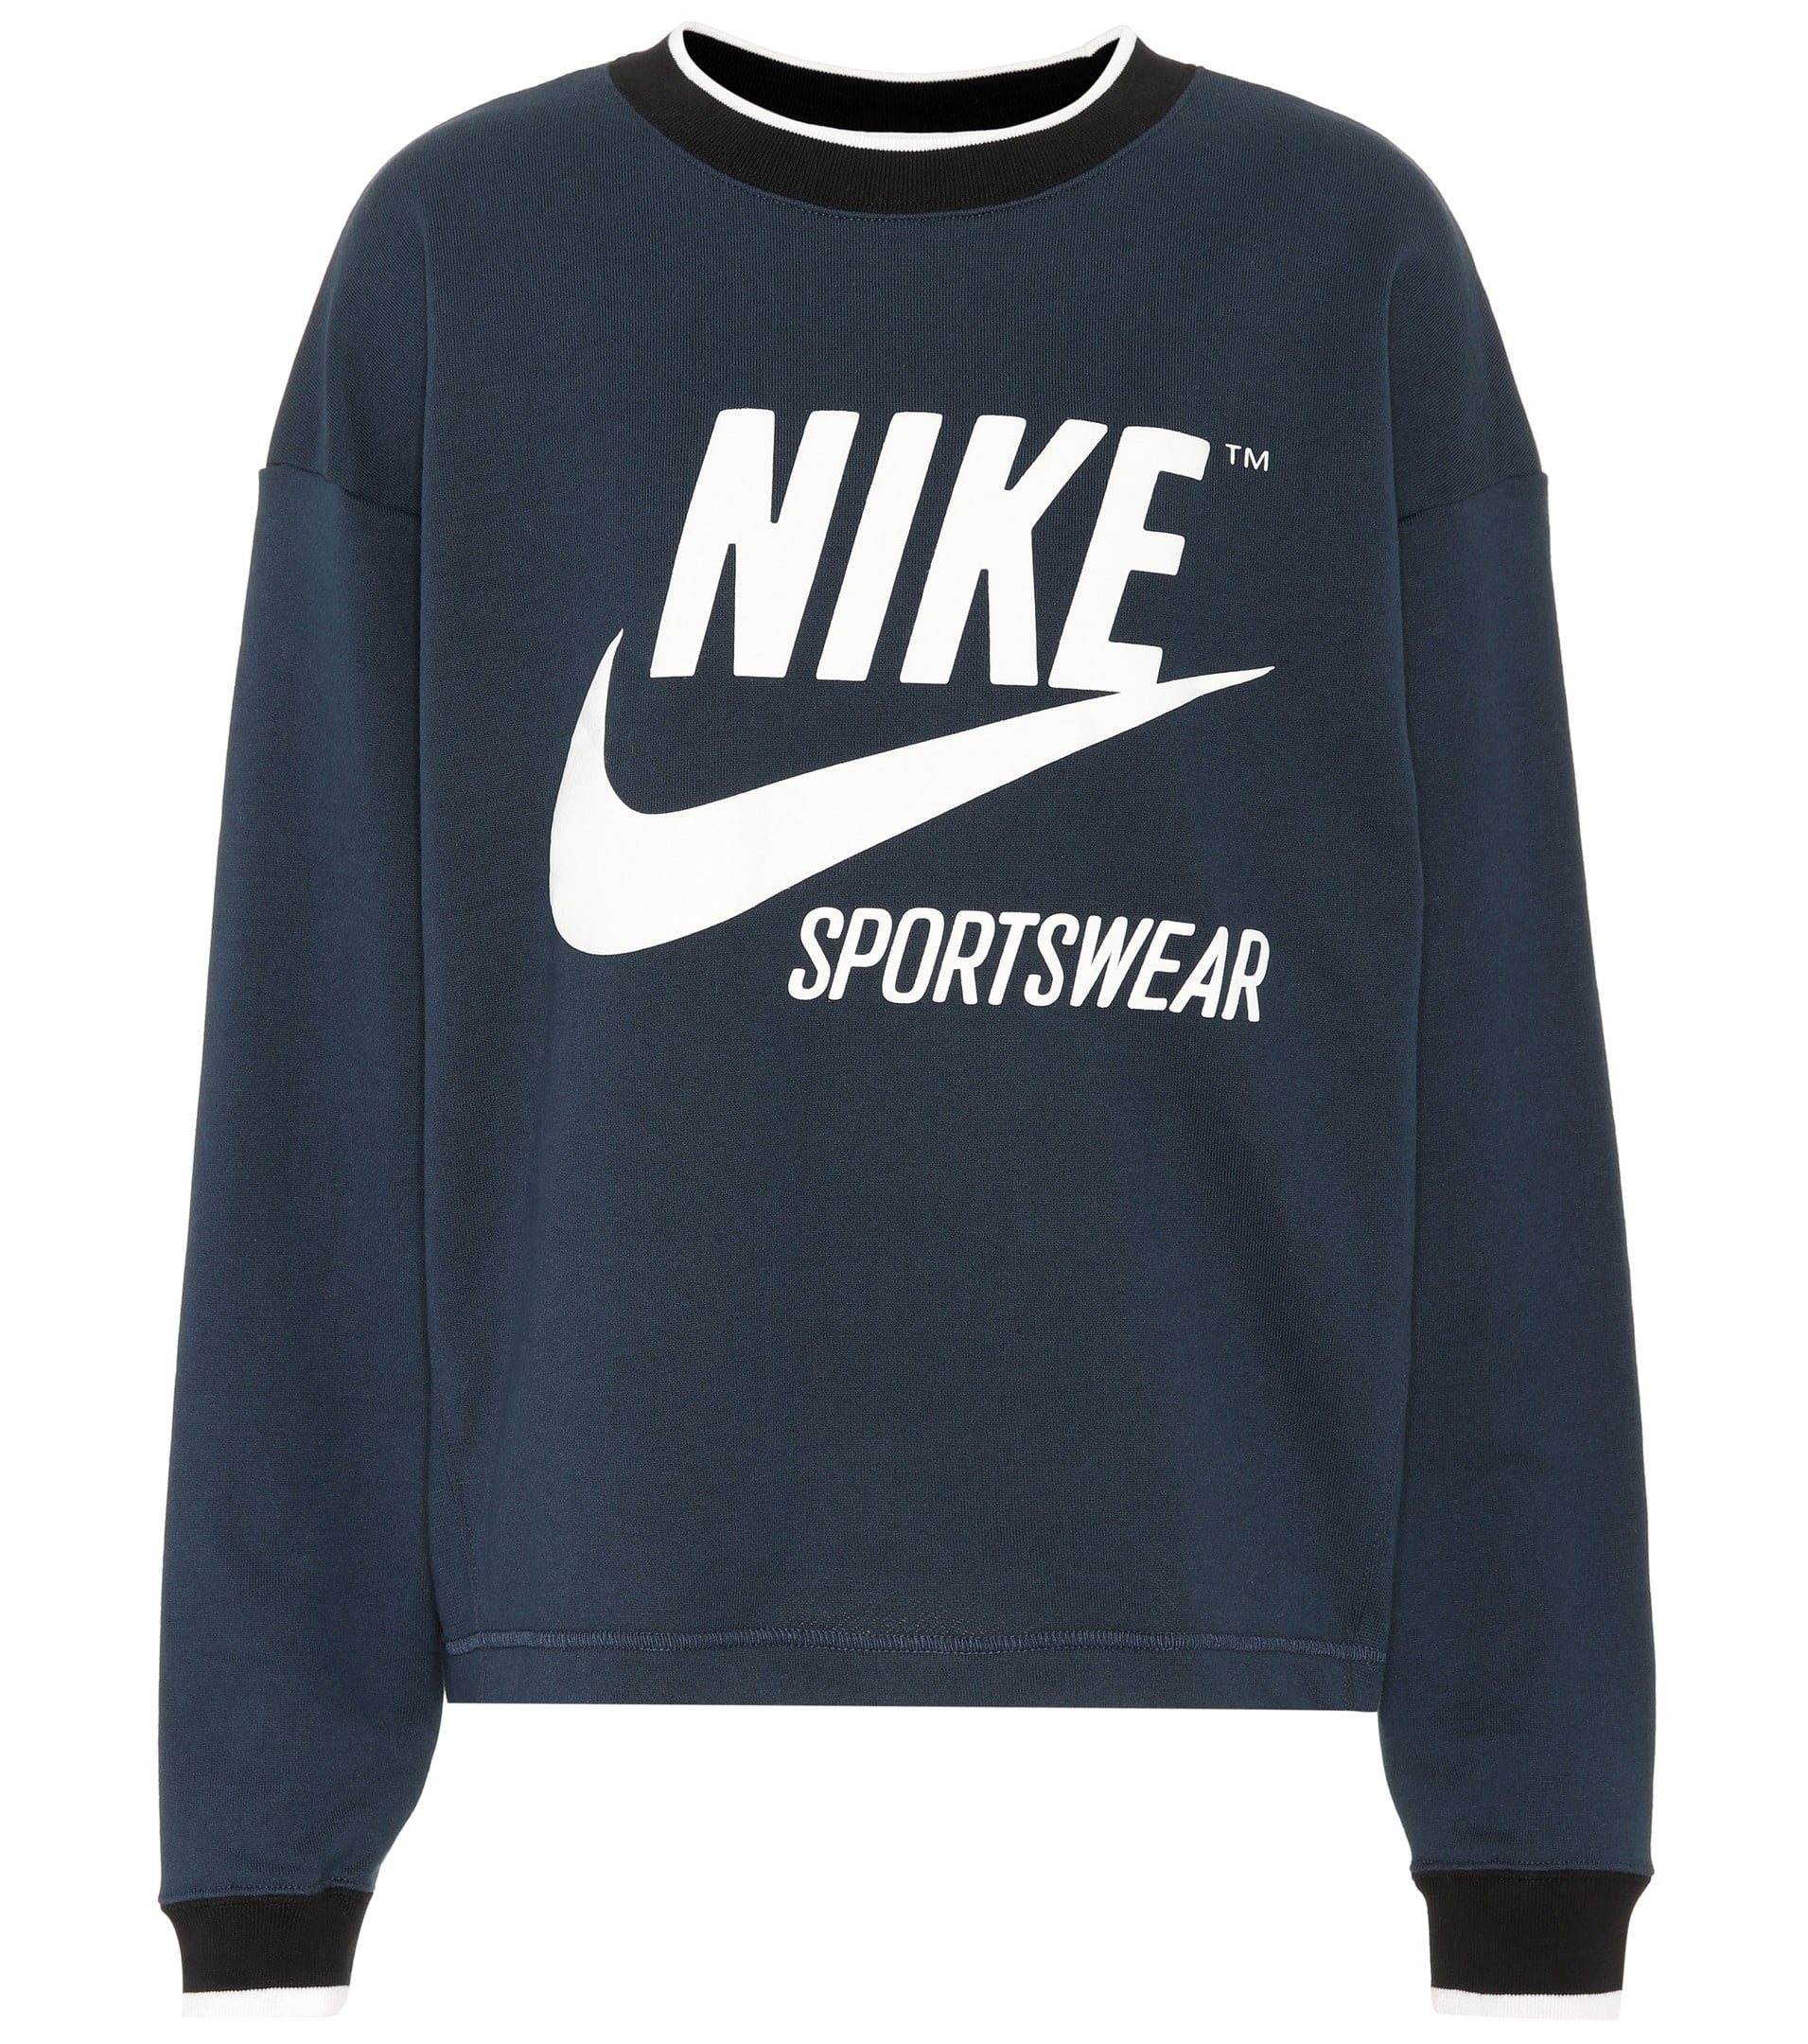 Nike Printed Sweatshirt | Fashion Girls 